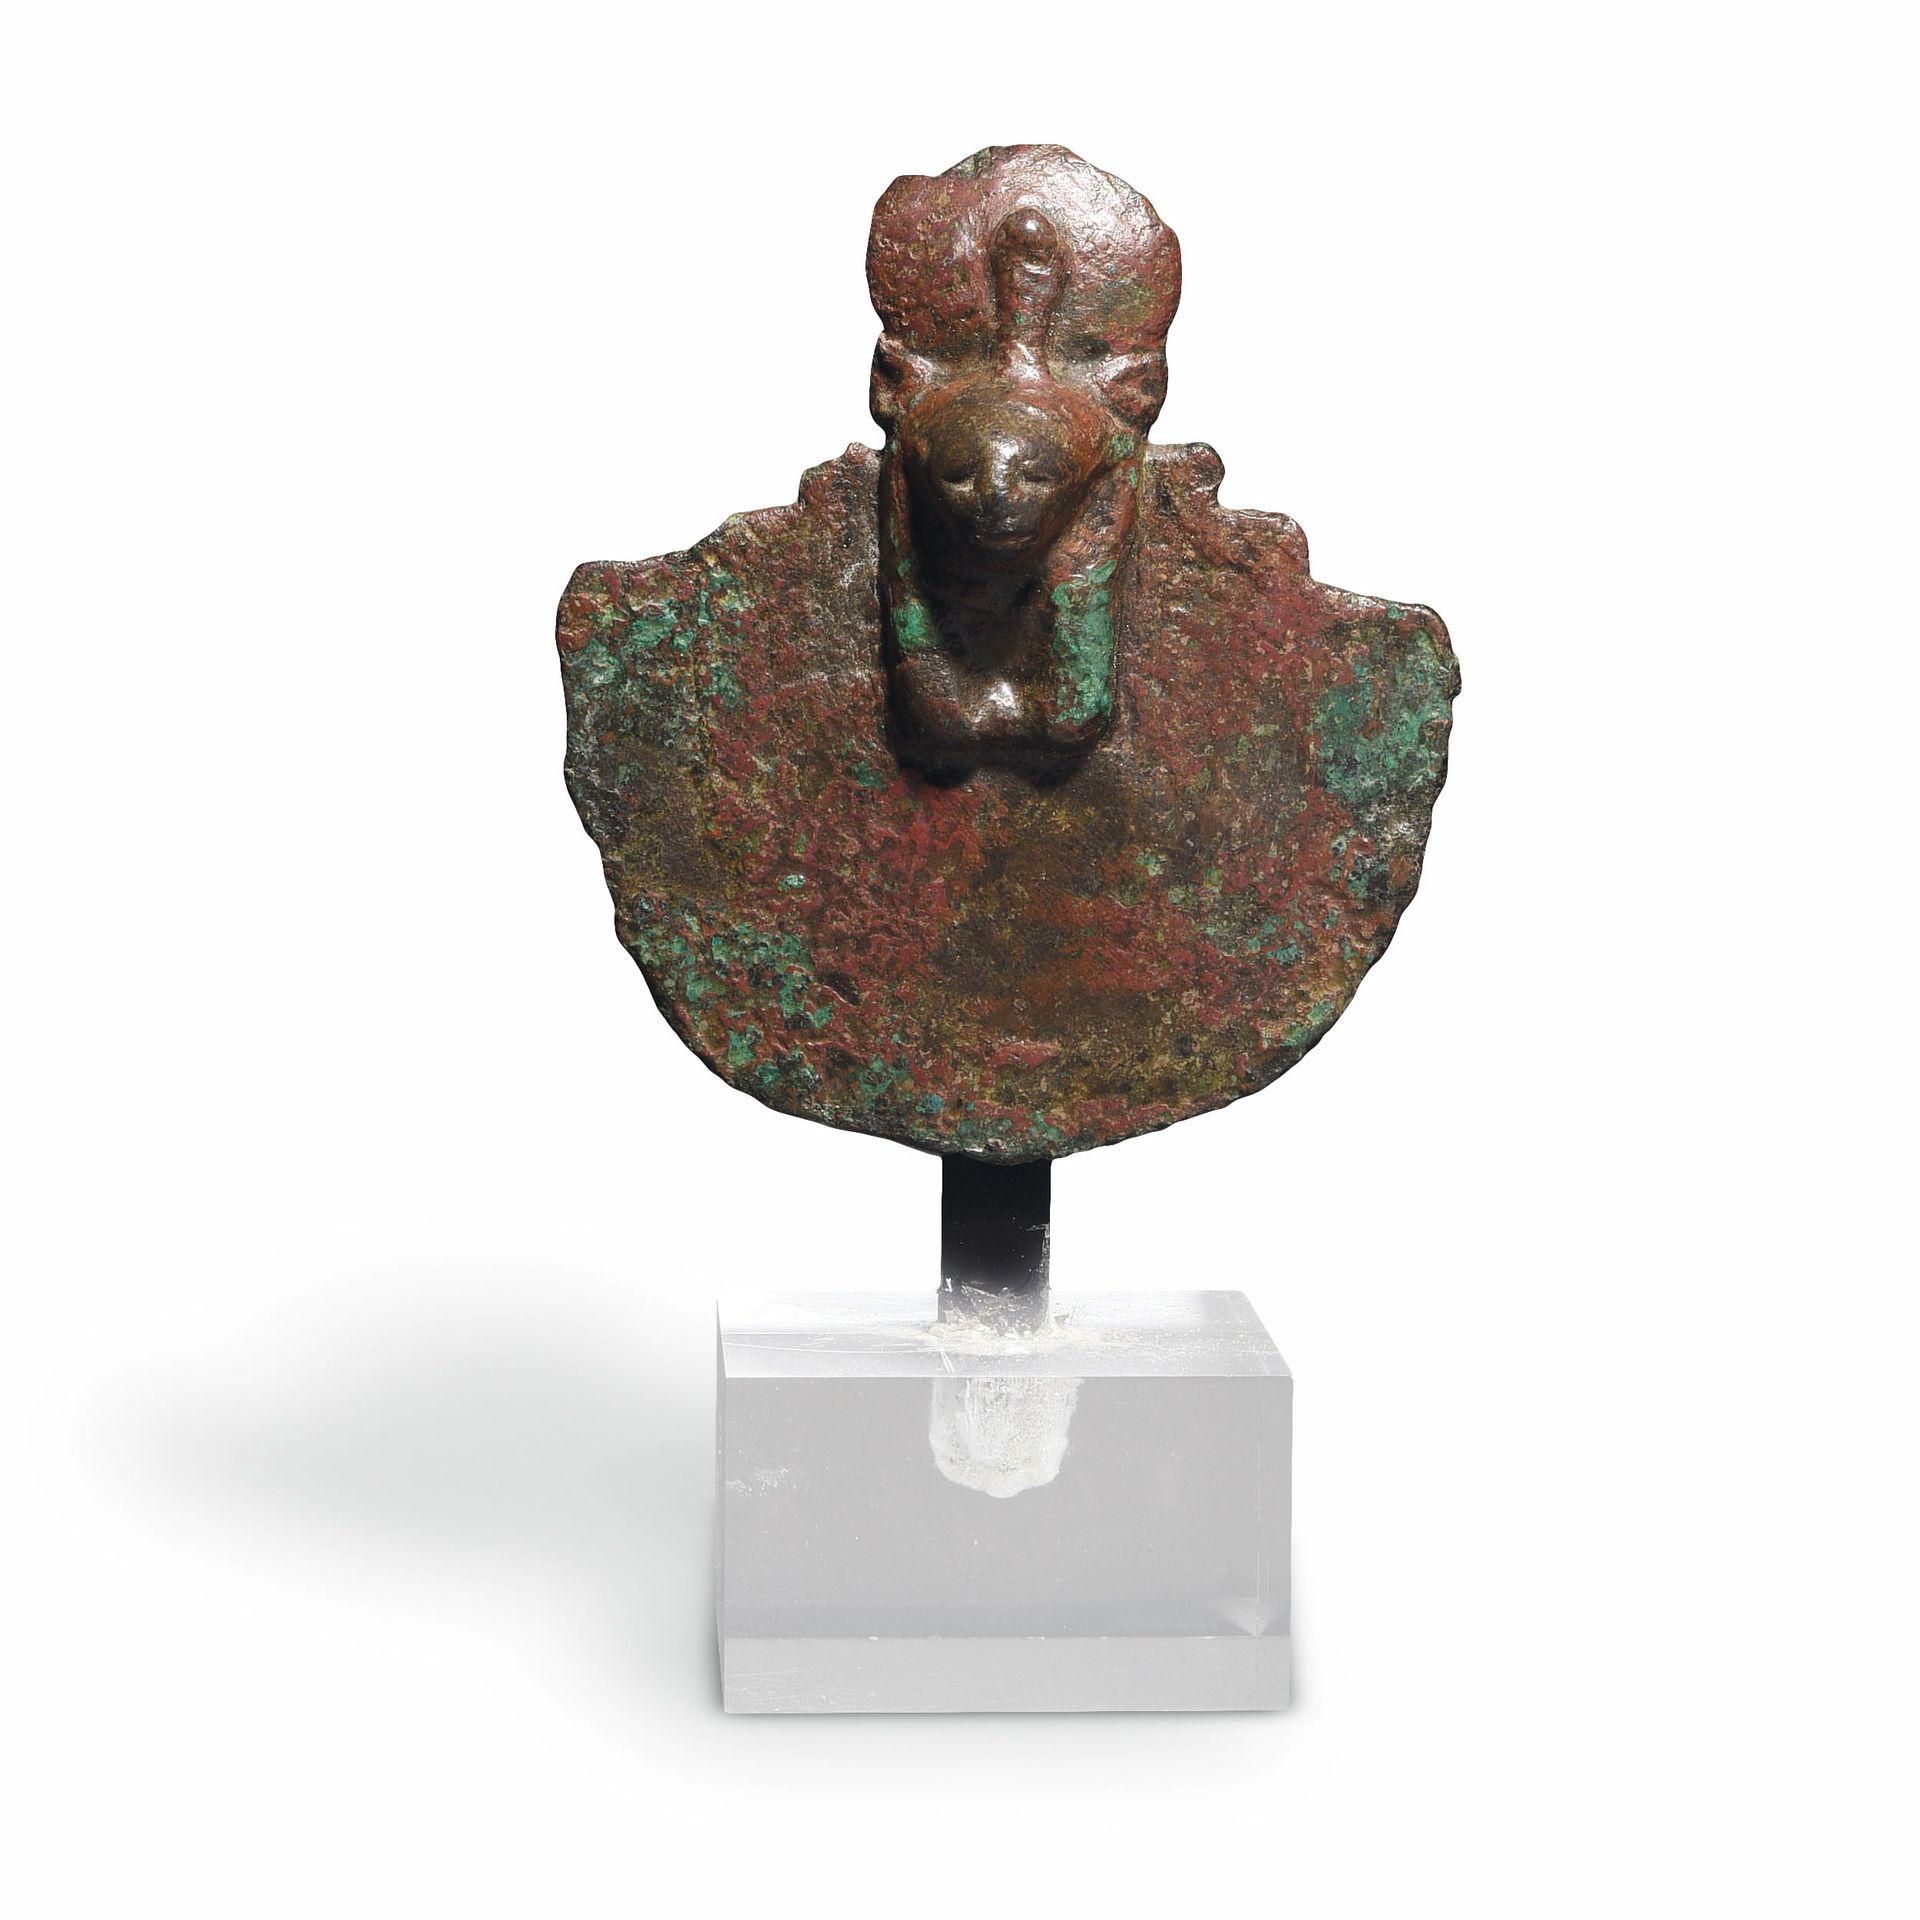 Null ÉGIDE DE SEKHMET

Egypte, Basse-Époque, 664-332 av. J.-C. 

Bronze à patine&hellip;